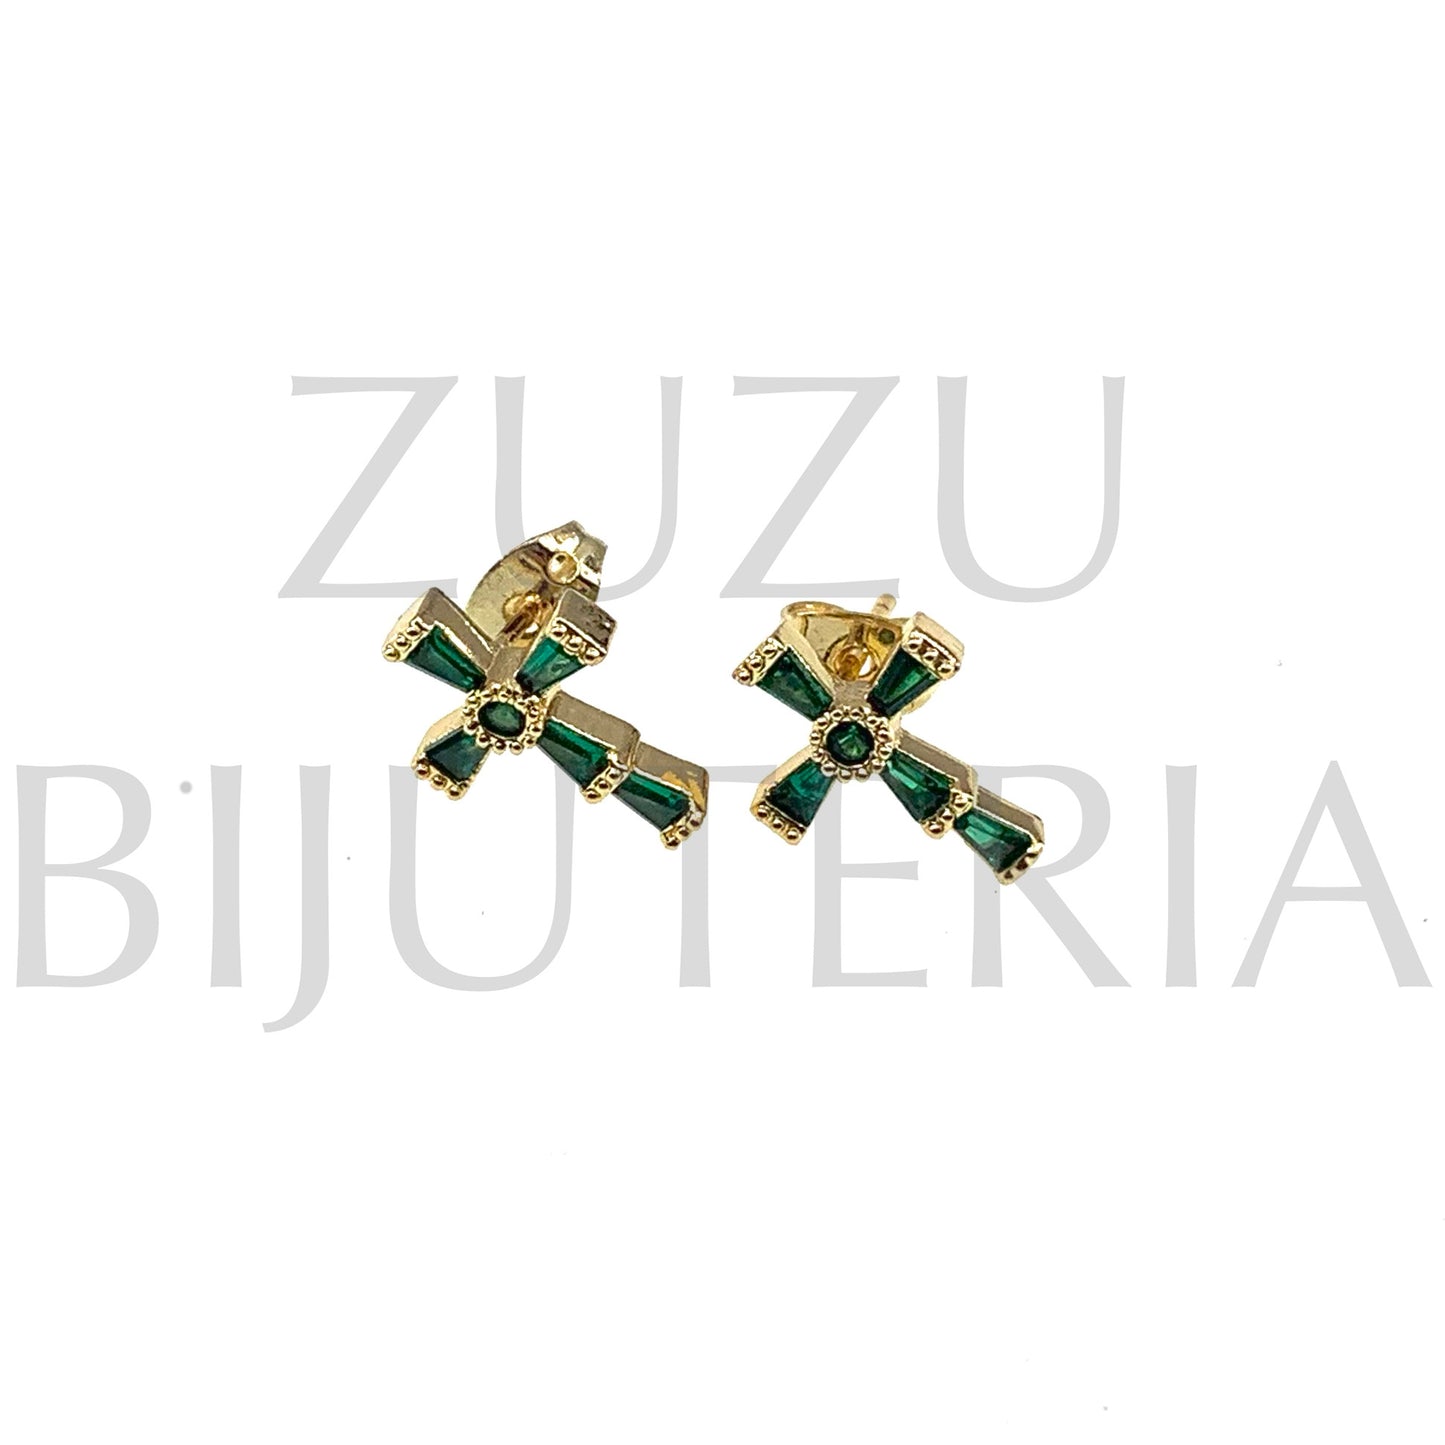 Brinco Cruz com Zirconias Verdes 13mm x 10mm - Latão